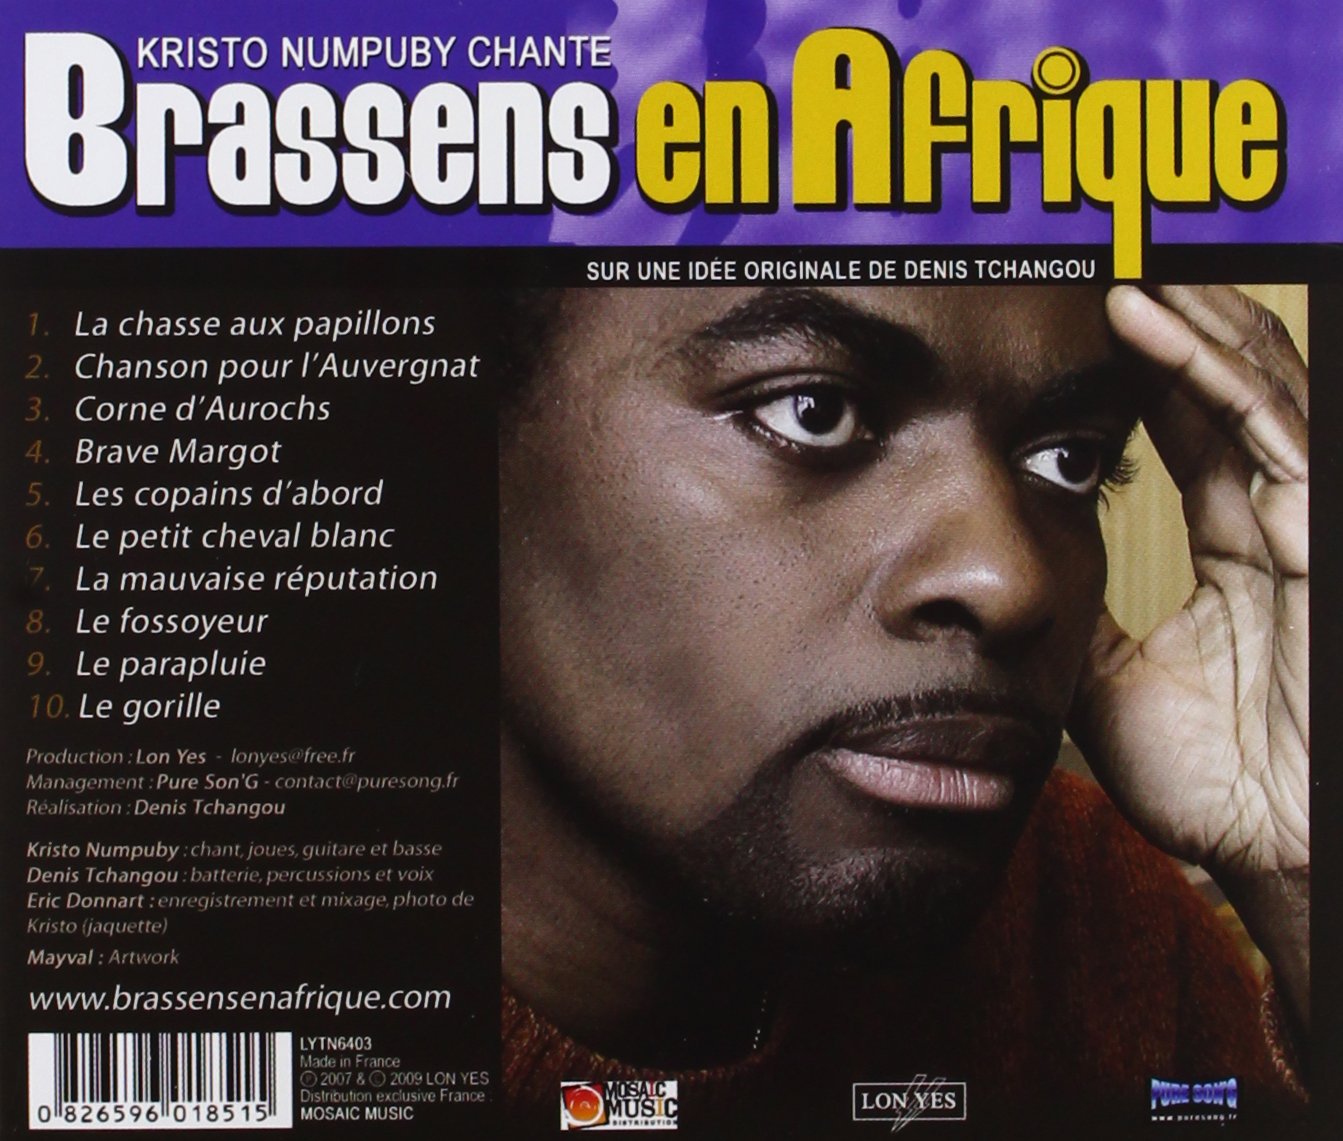 [Album] Brassens en Afrique